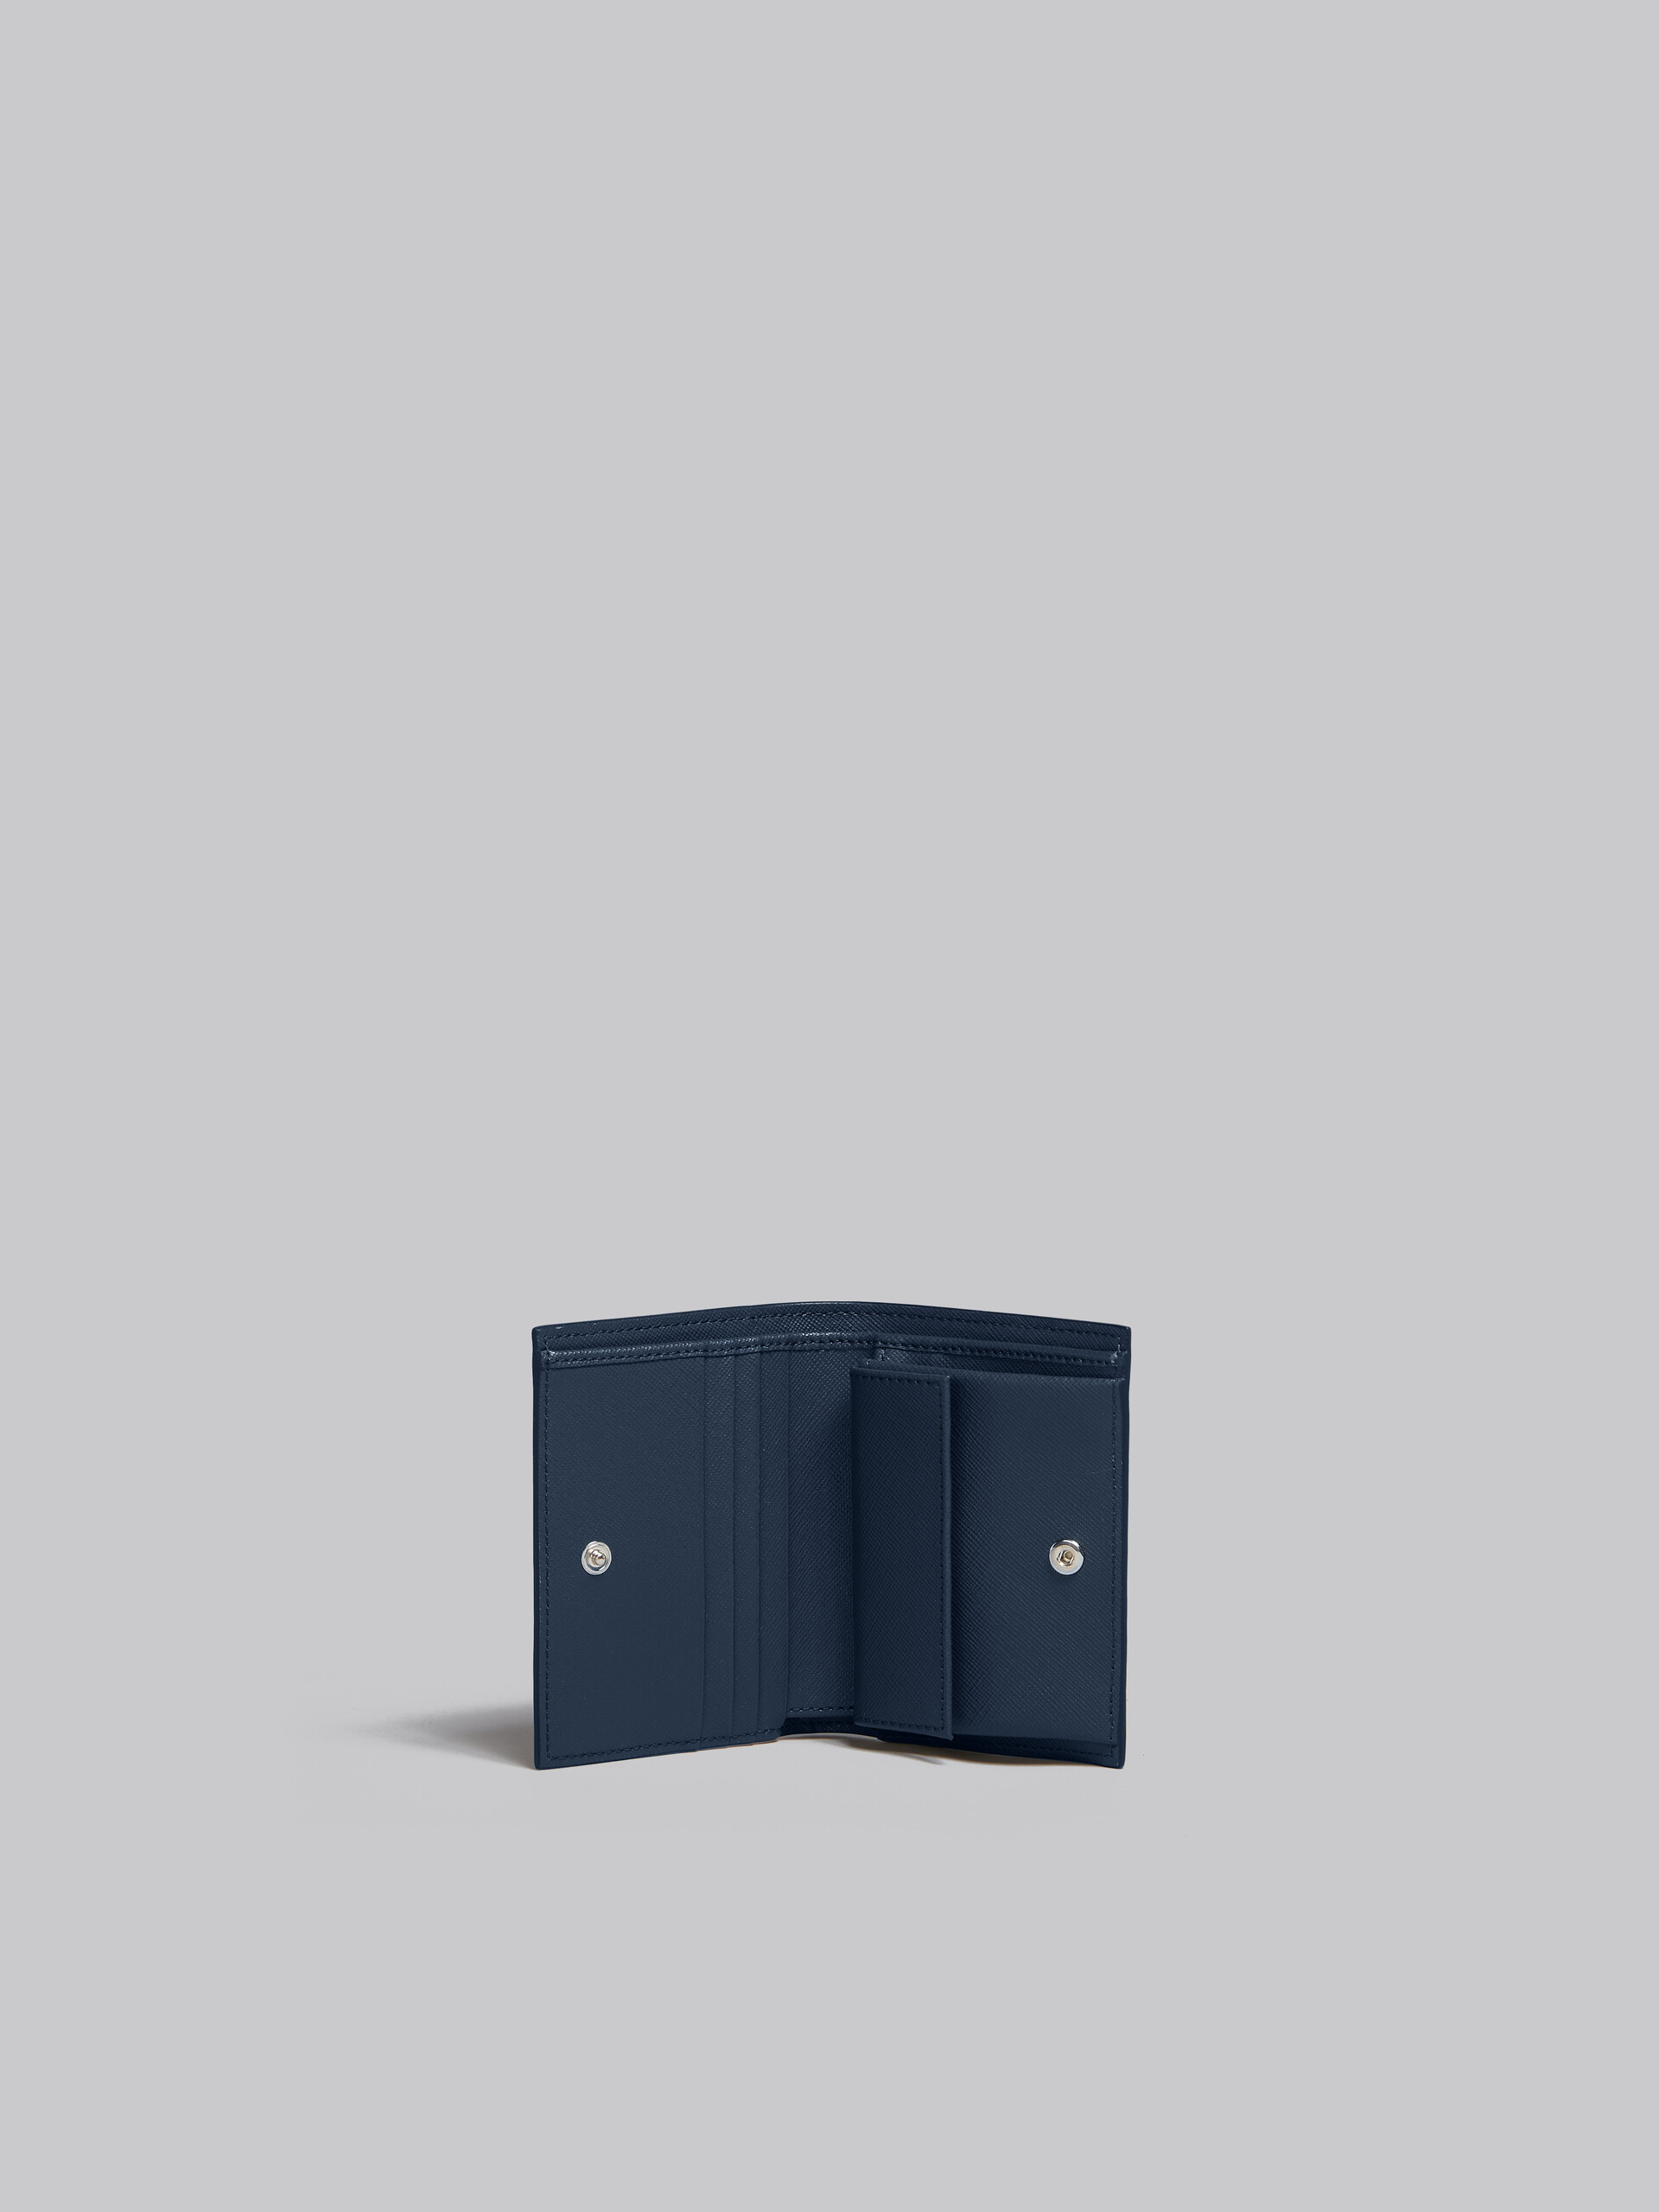 ディープブルー グリーン サフィアーノレザー製 二つ折りウォレット - 財布 - Image 2